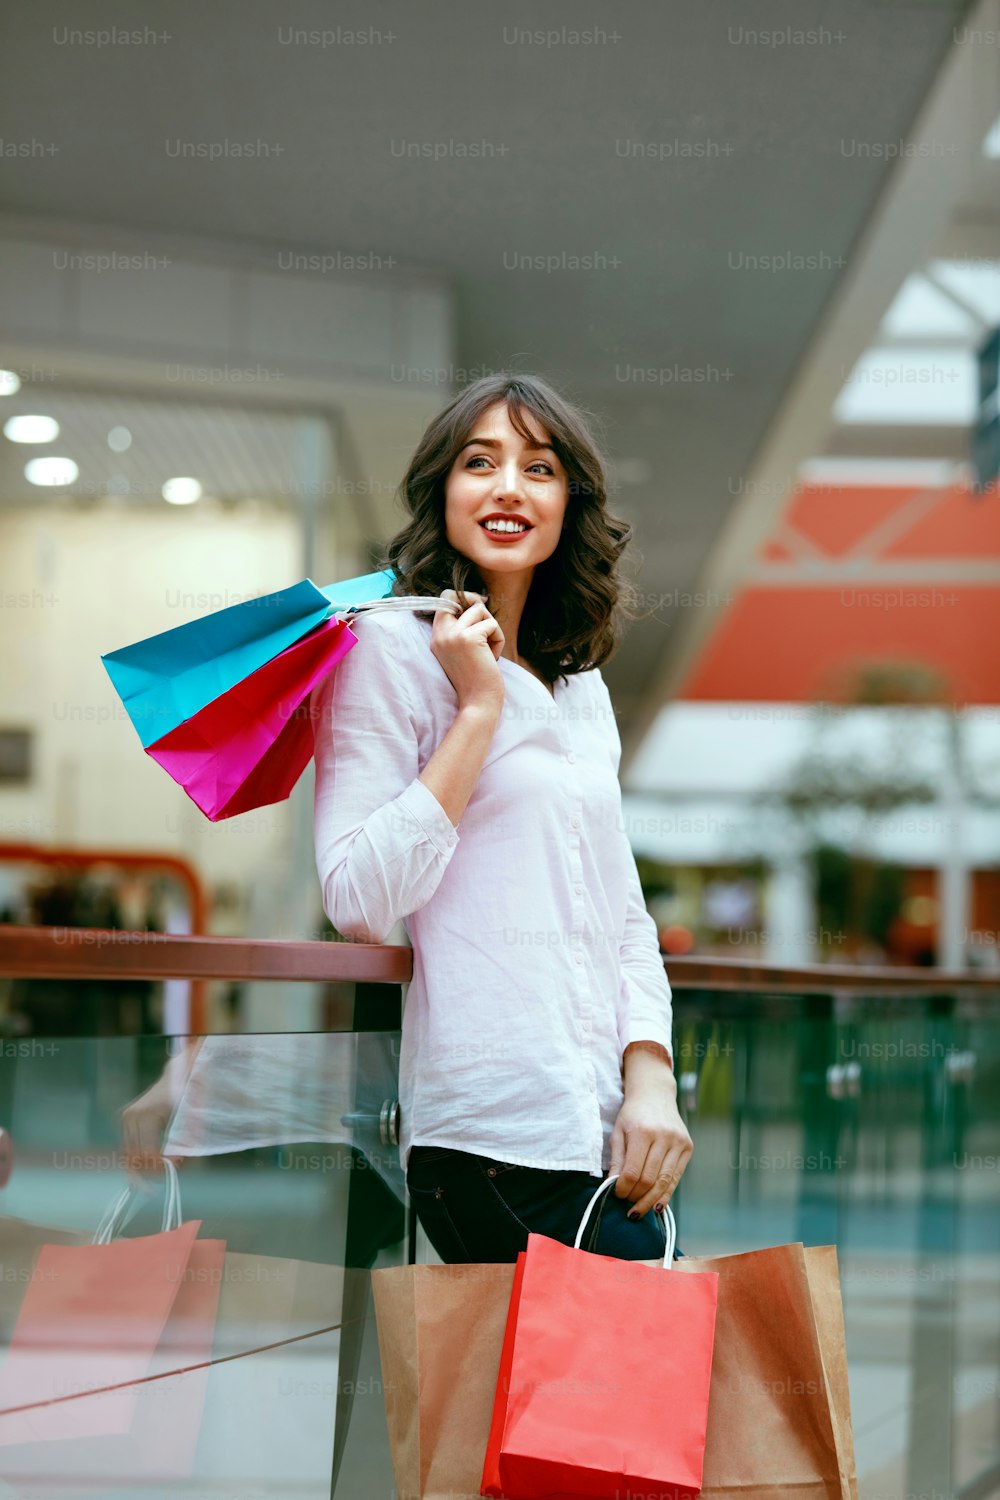 Frau im Einkaufszentrum, Frau mit bunten Taschen, die Spaß im Einkaufszentrum haben. Hohe Auflösung.